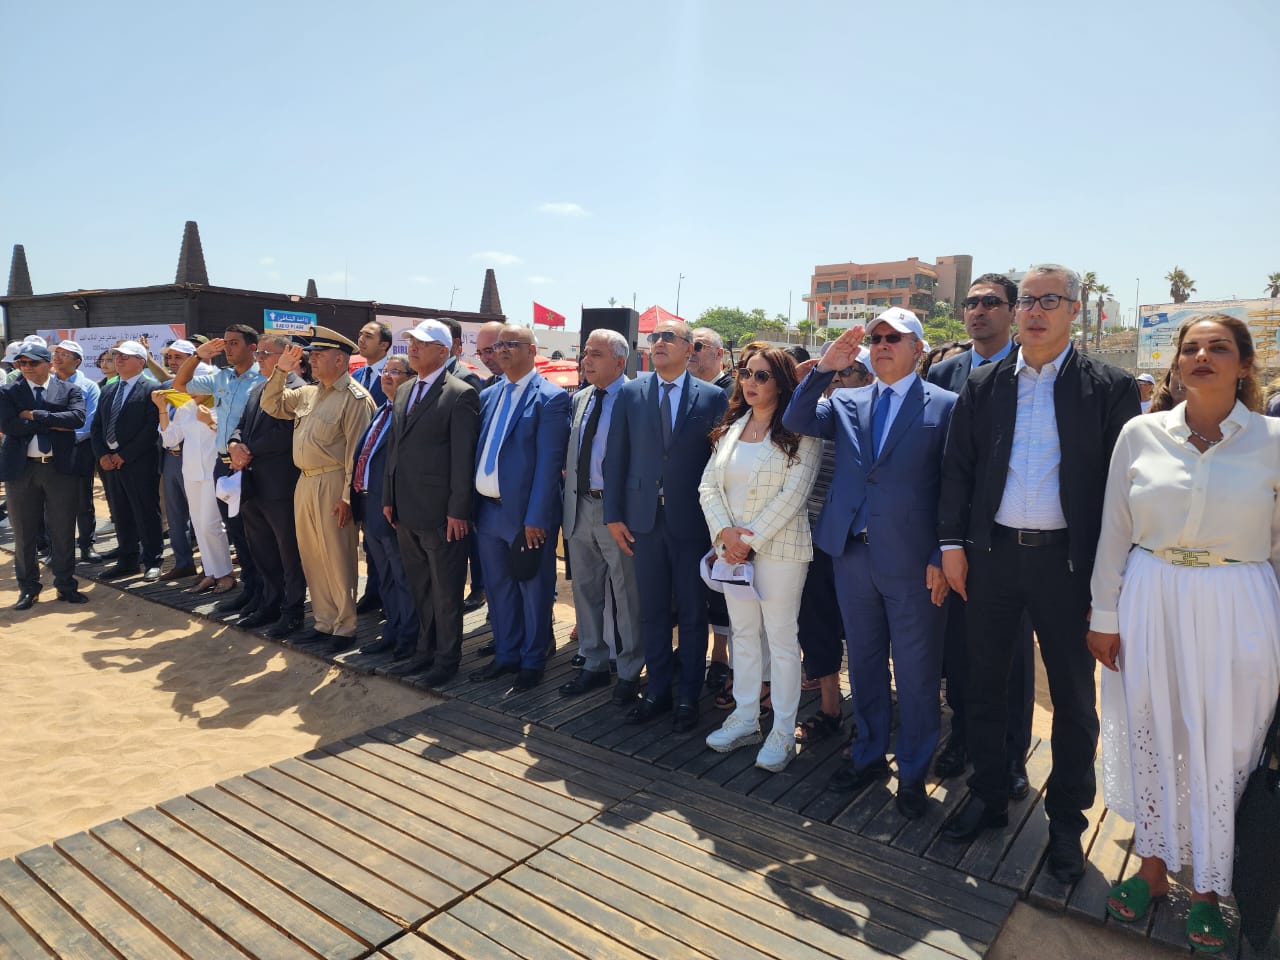 Cérémonie officielle de levée du drapeau Pavillon bleu à la Ain Diab